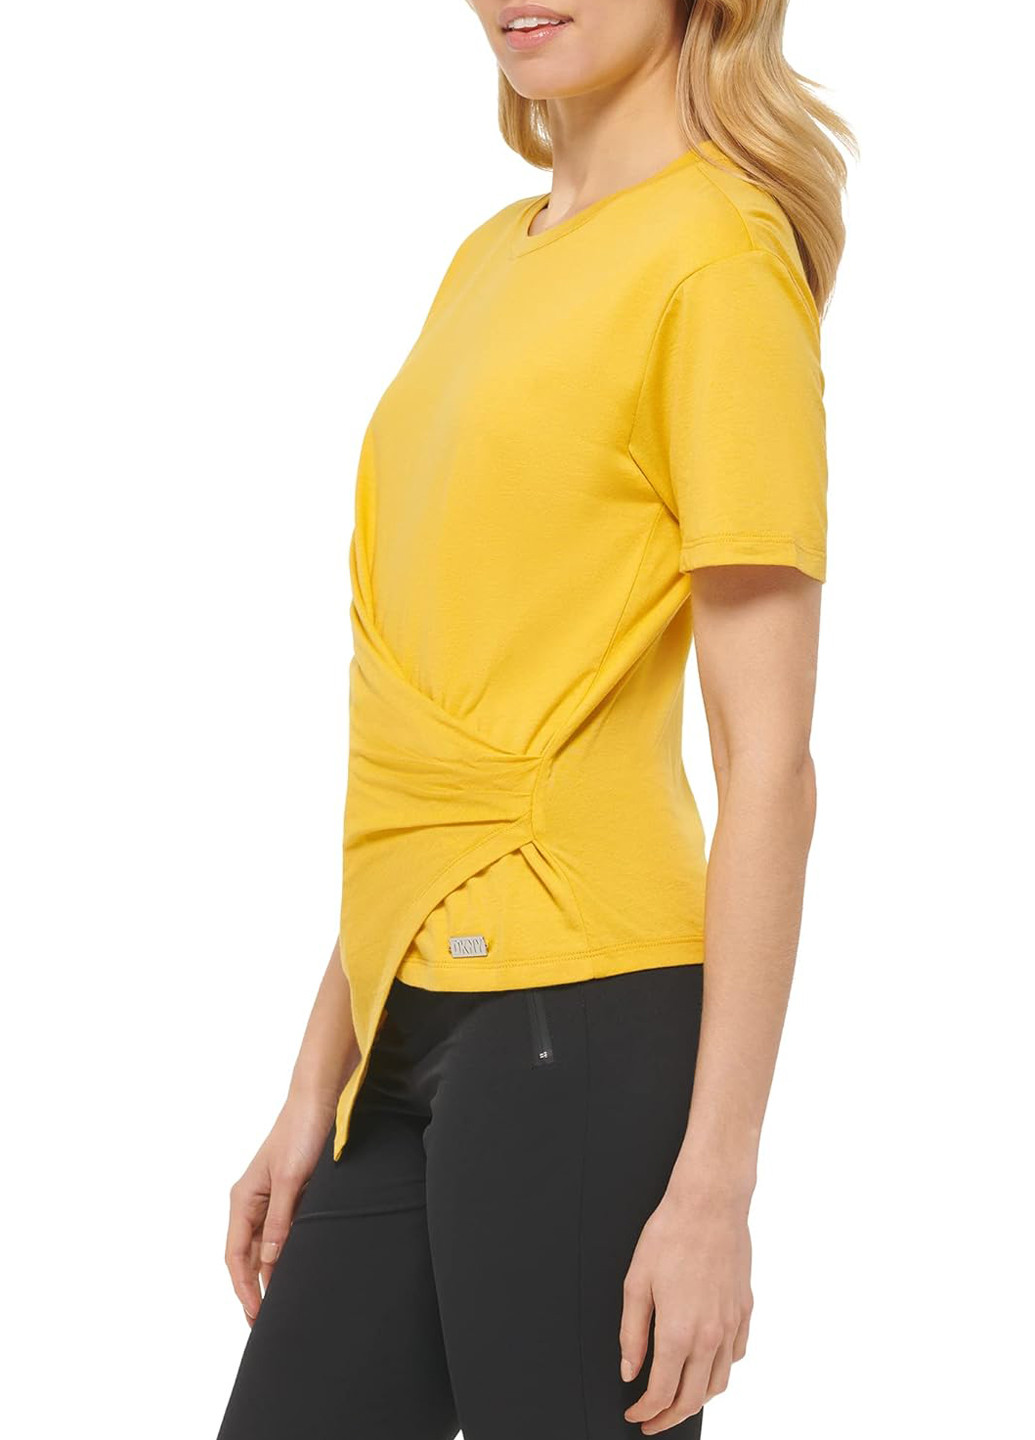 Жовта літня футболка DKNY